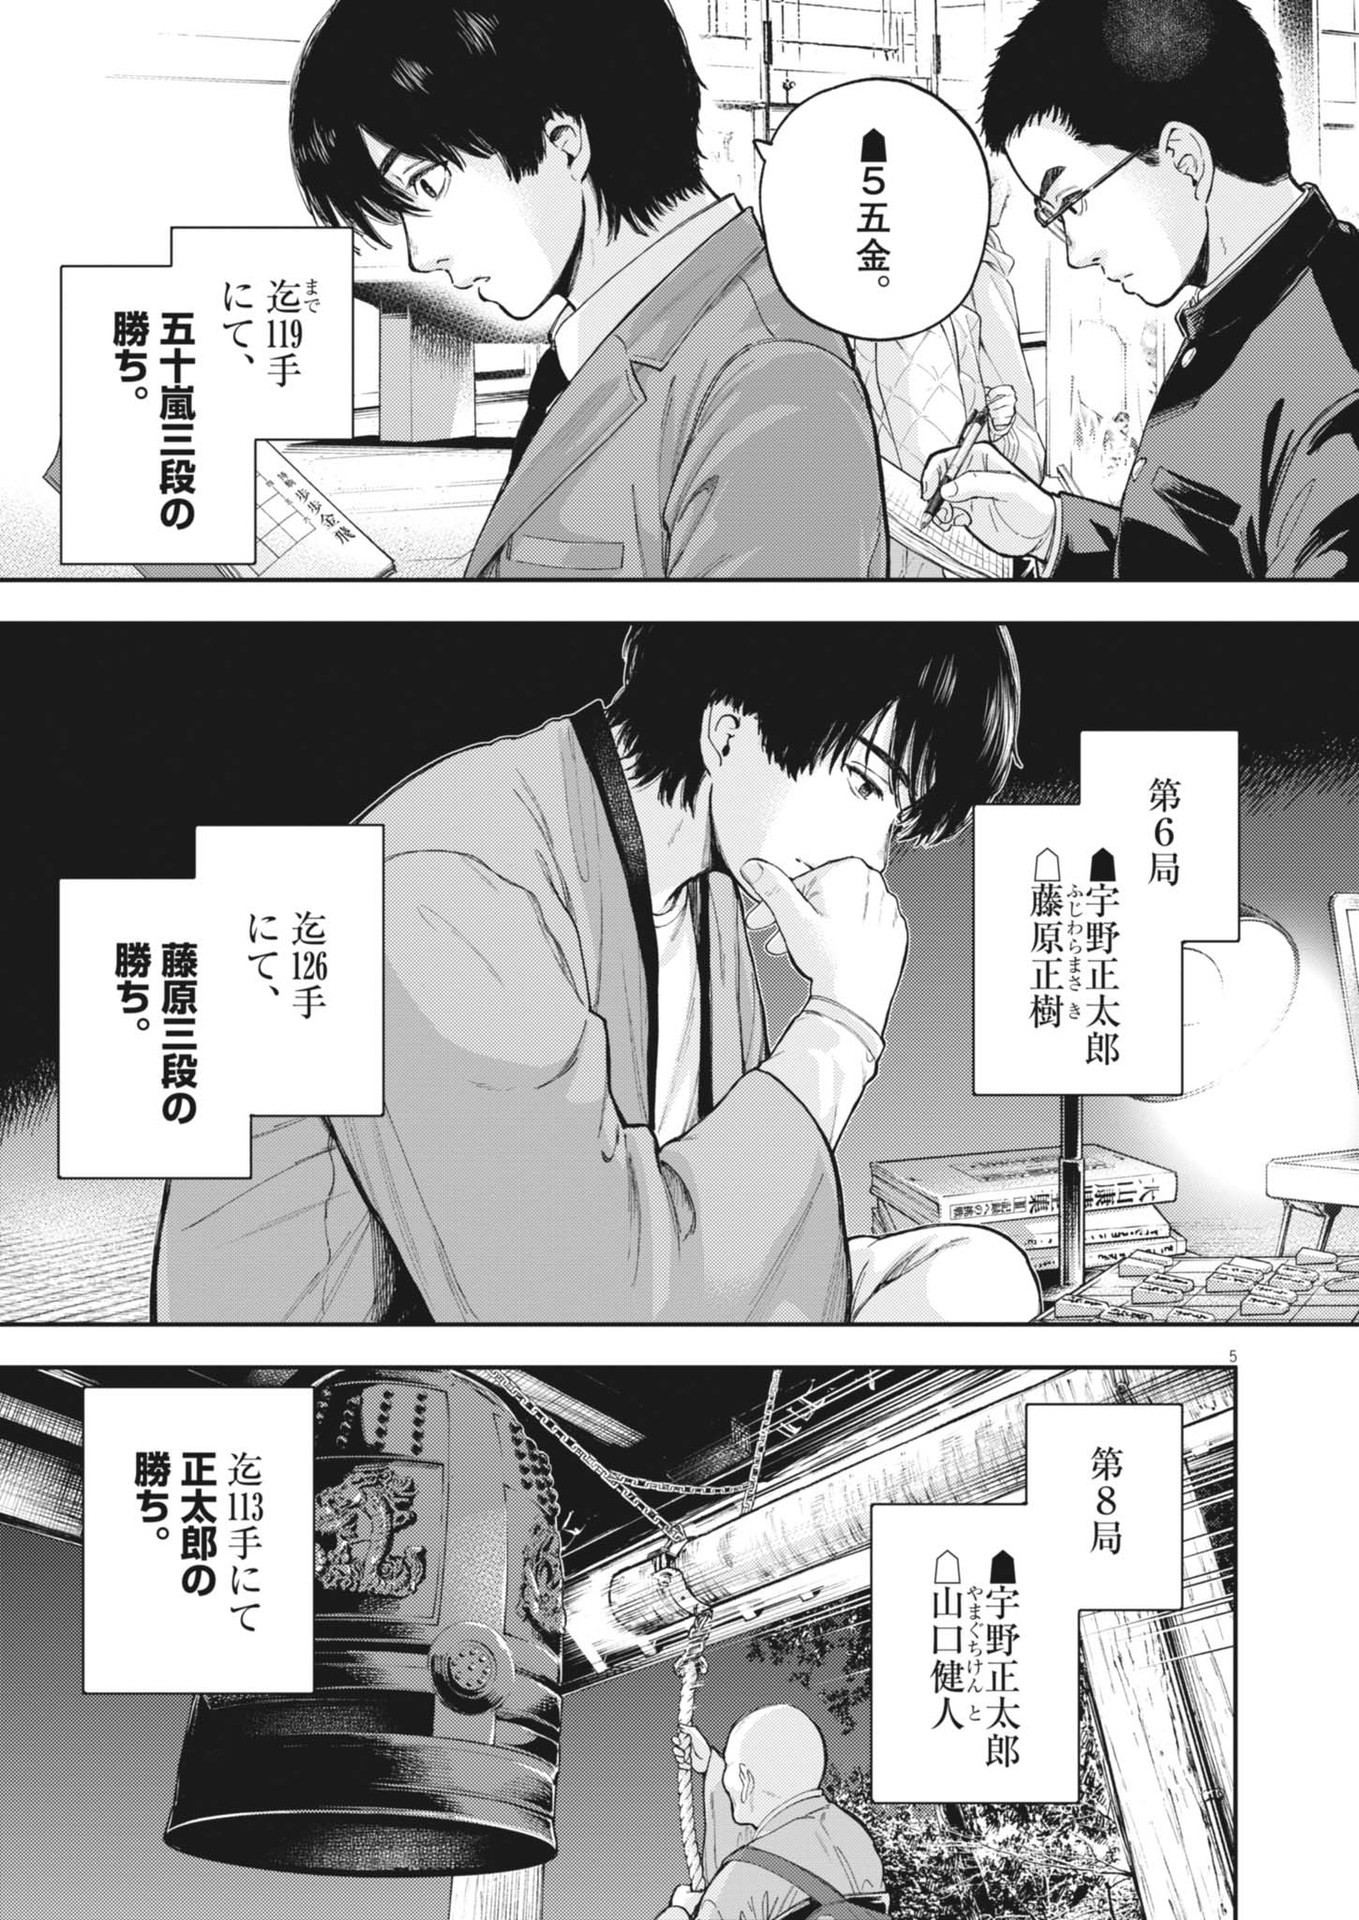 Yumenashi-sensei no Shinroshidou - Chapter 32 - Page 5